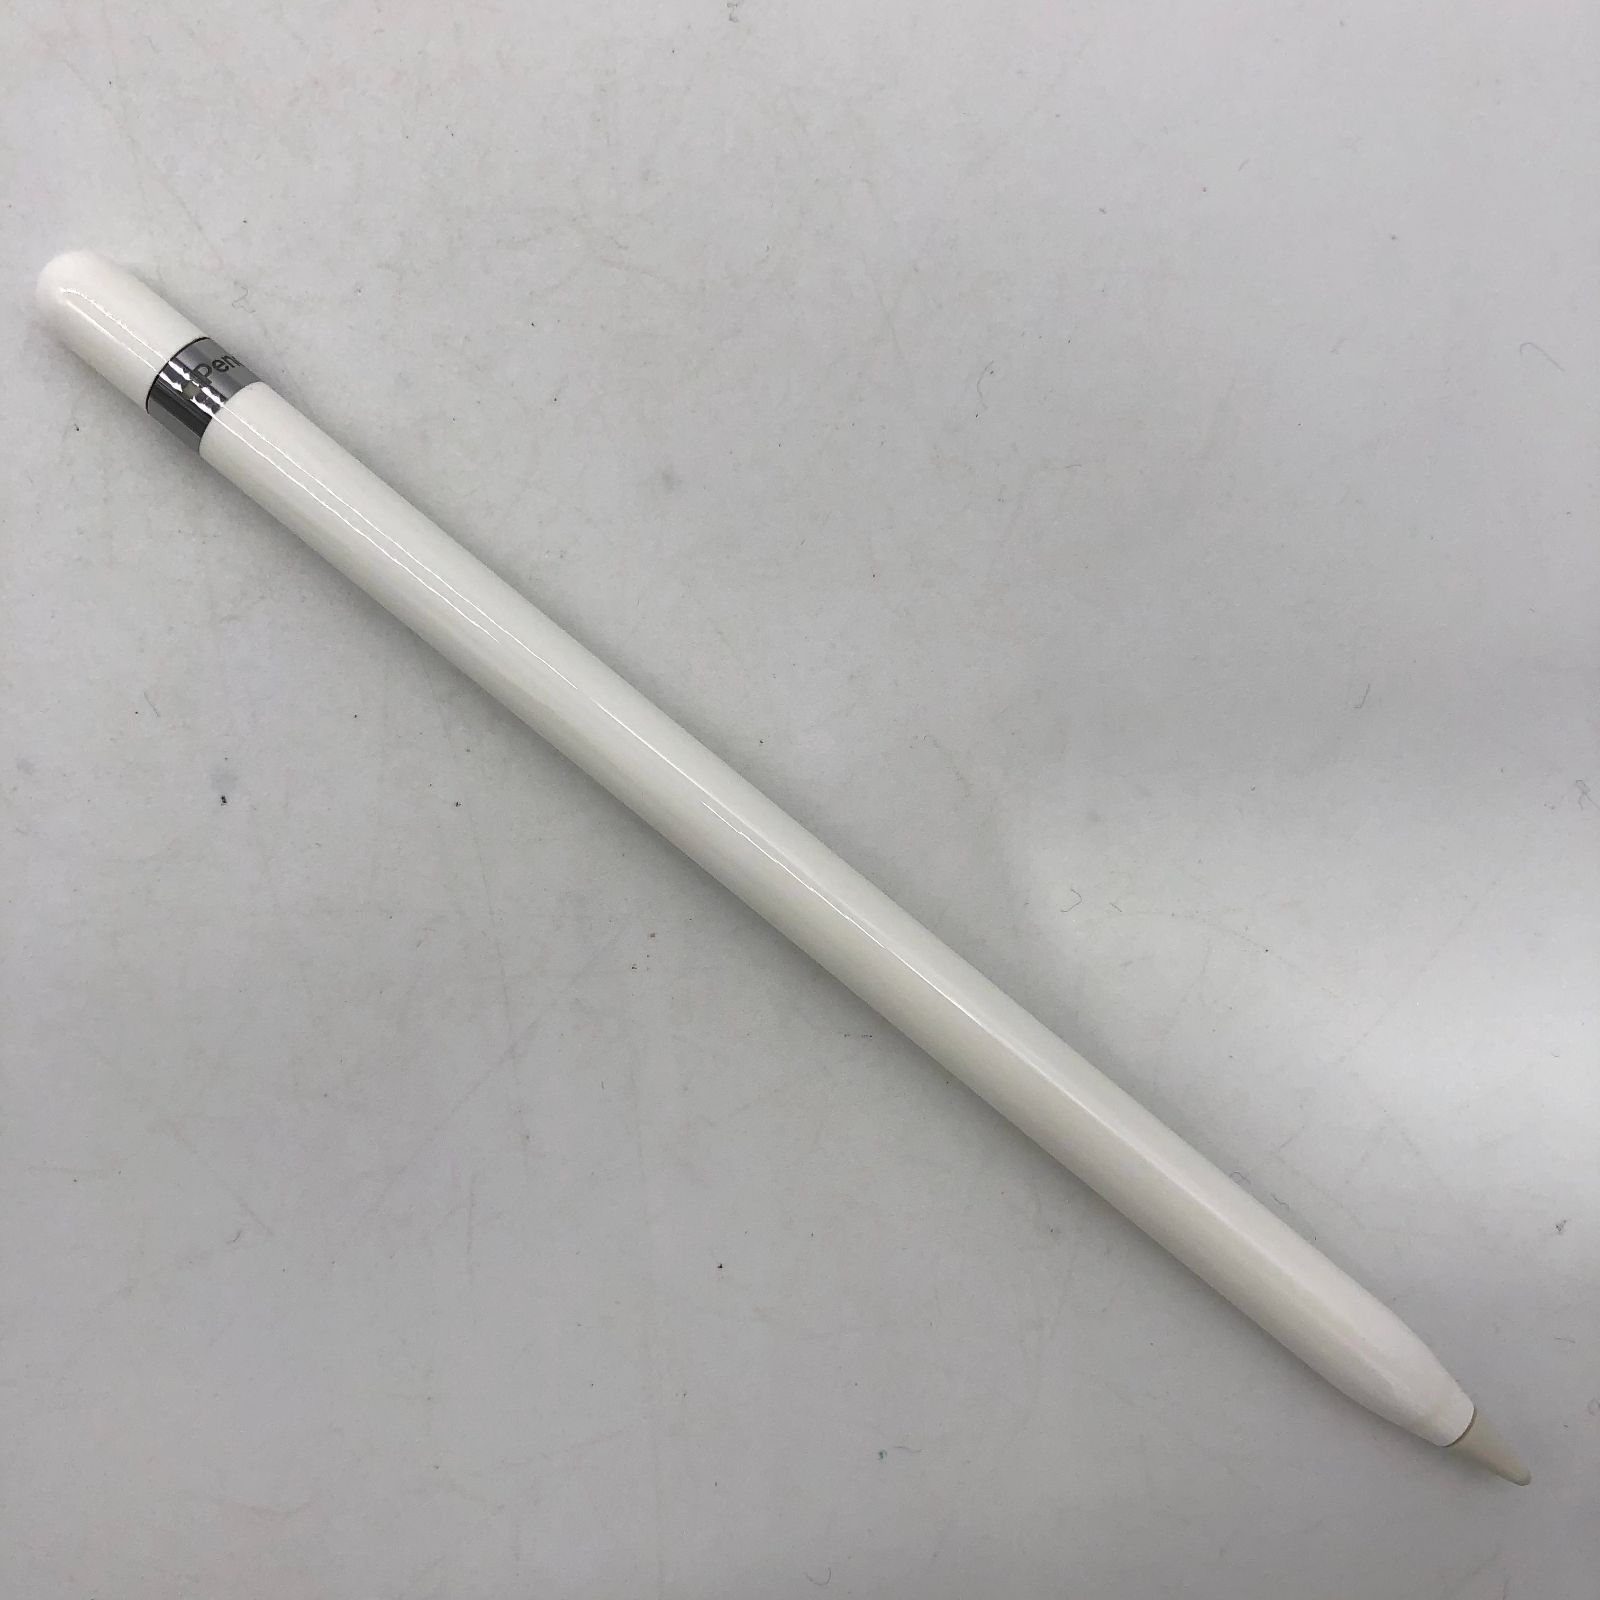 ▽【動作確認済み】Apple Pencil 第1世代 アップルペンシル ホワイト 